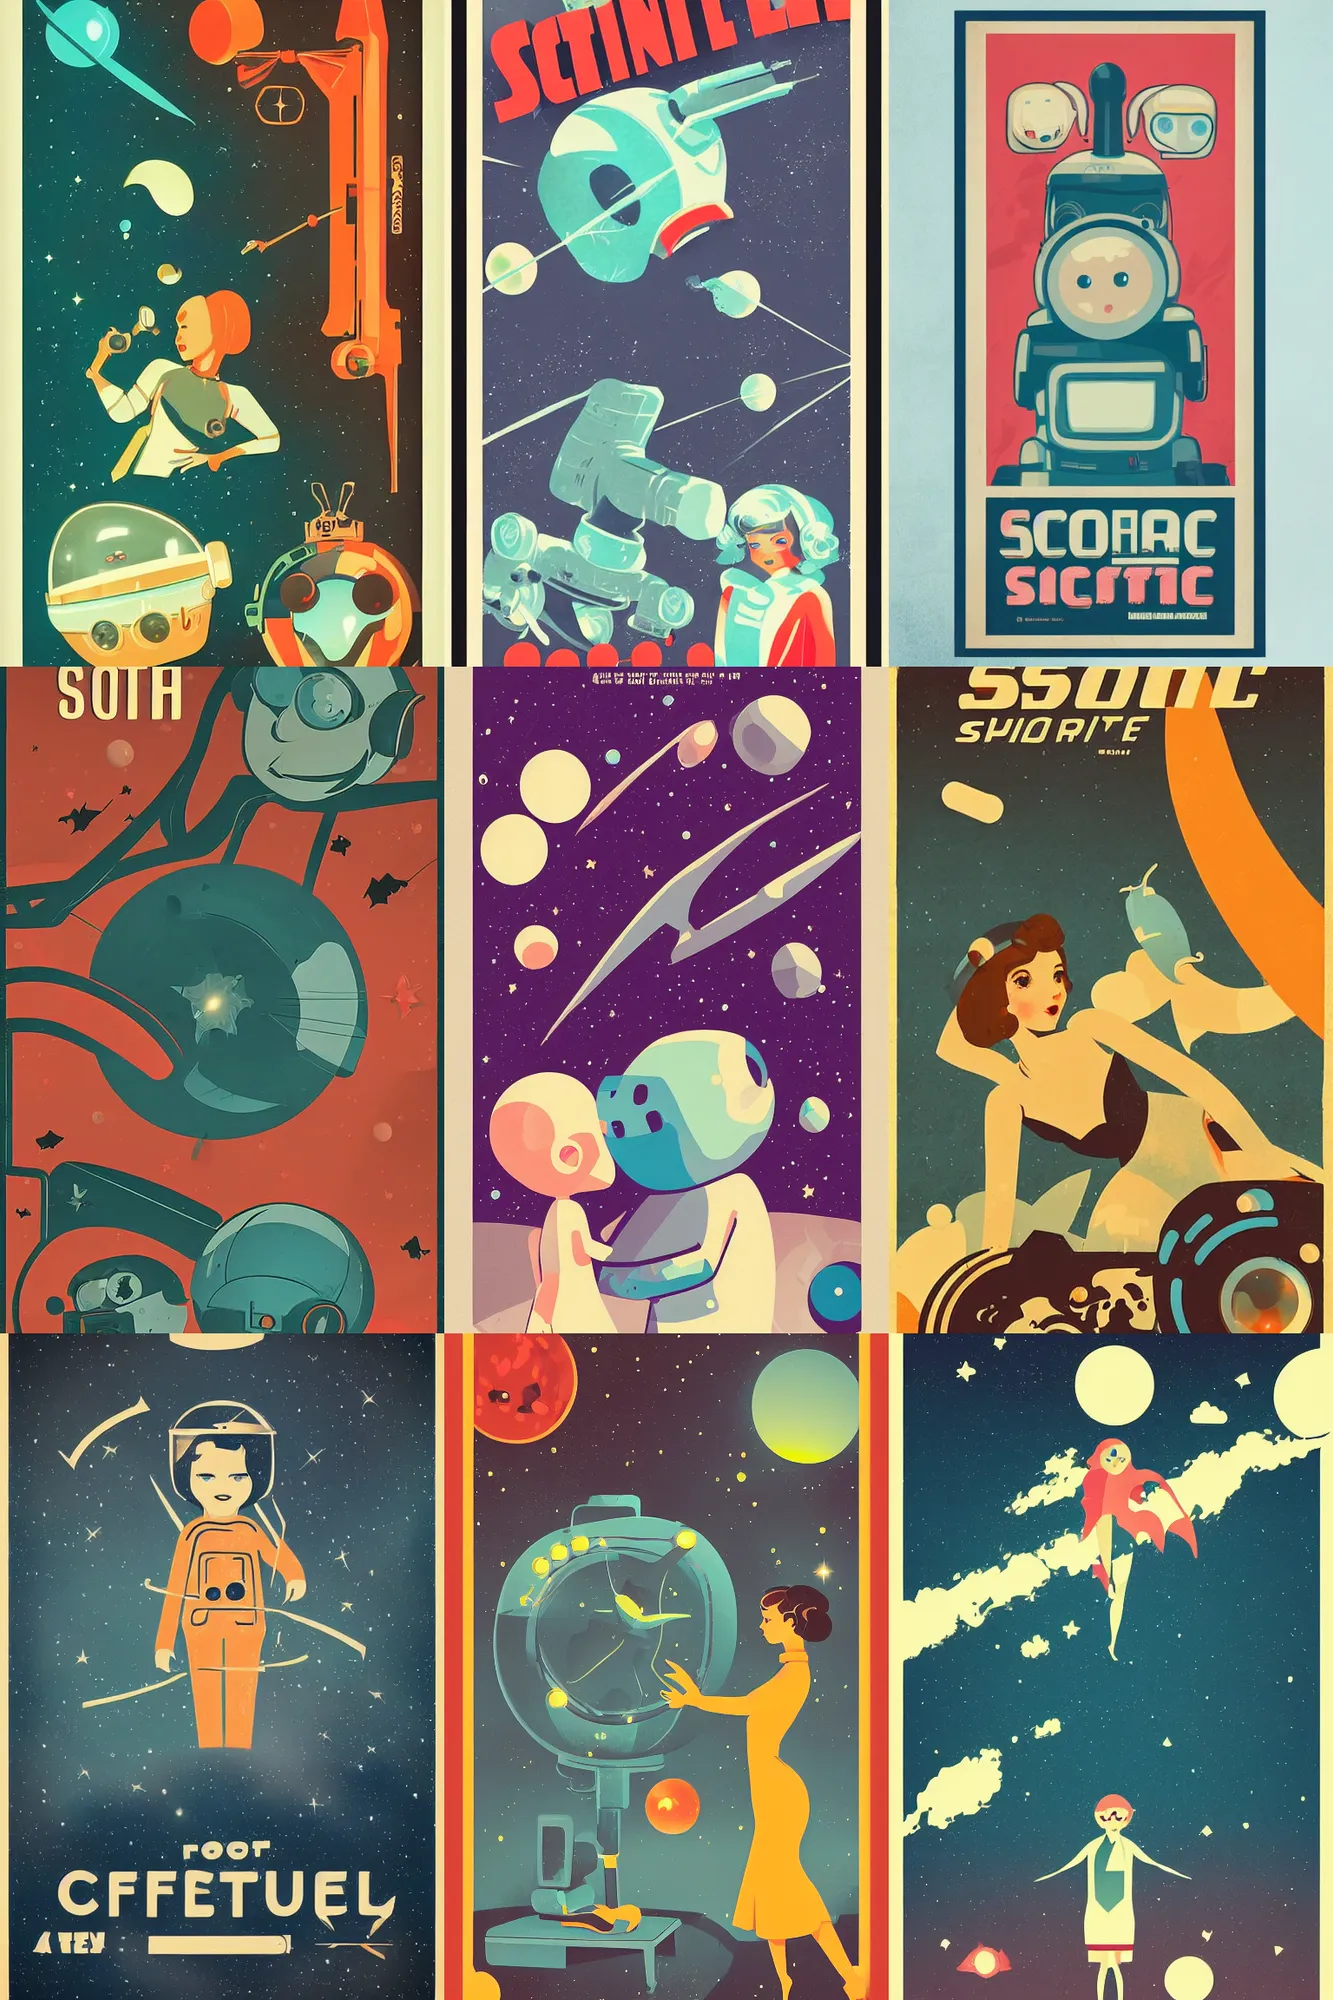 Prompt: illustration cute retro sci - fi poster, soft focus